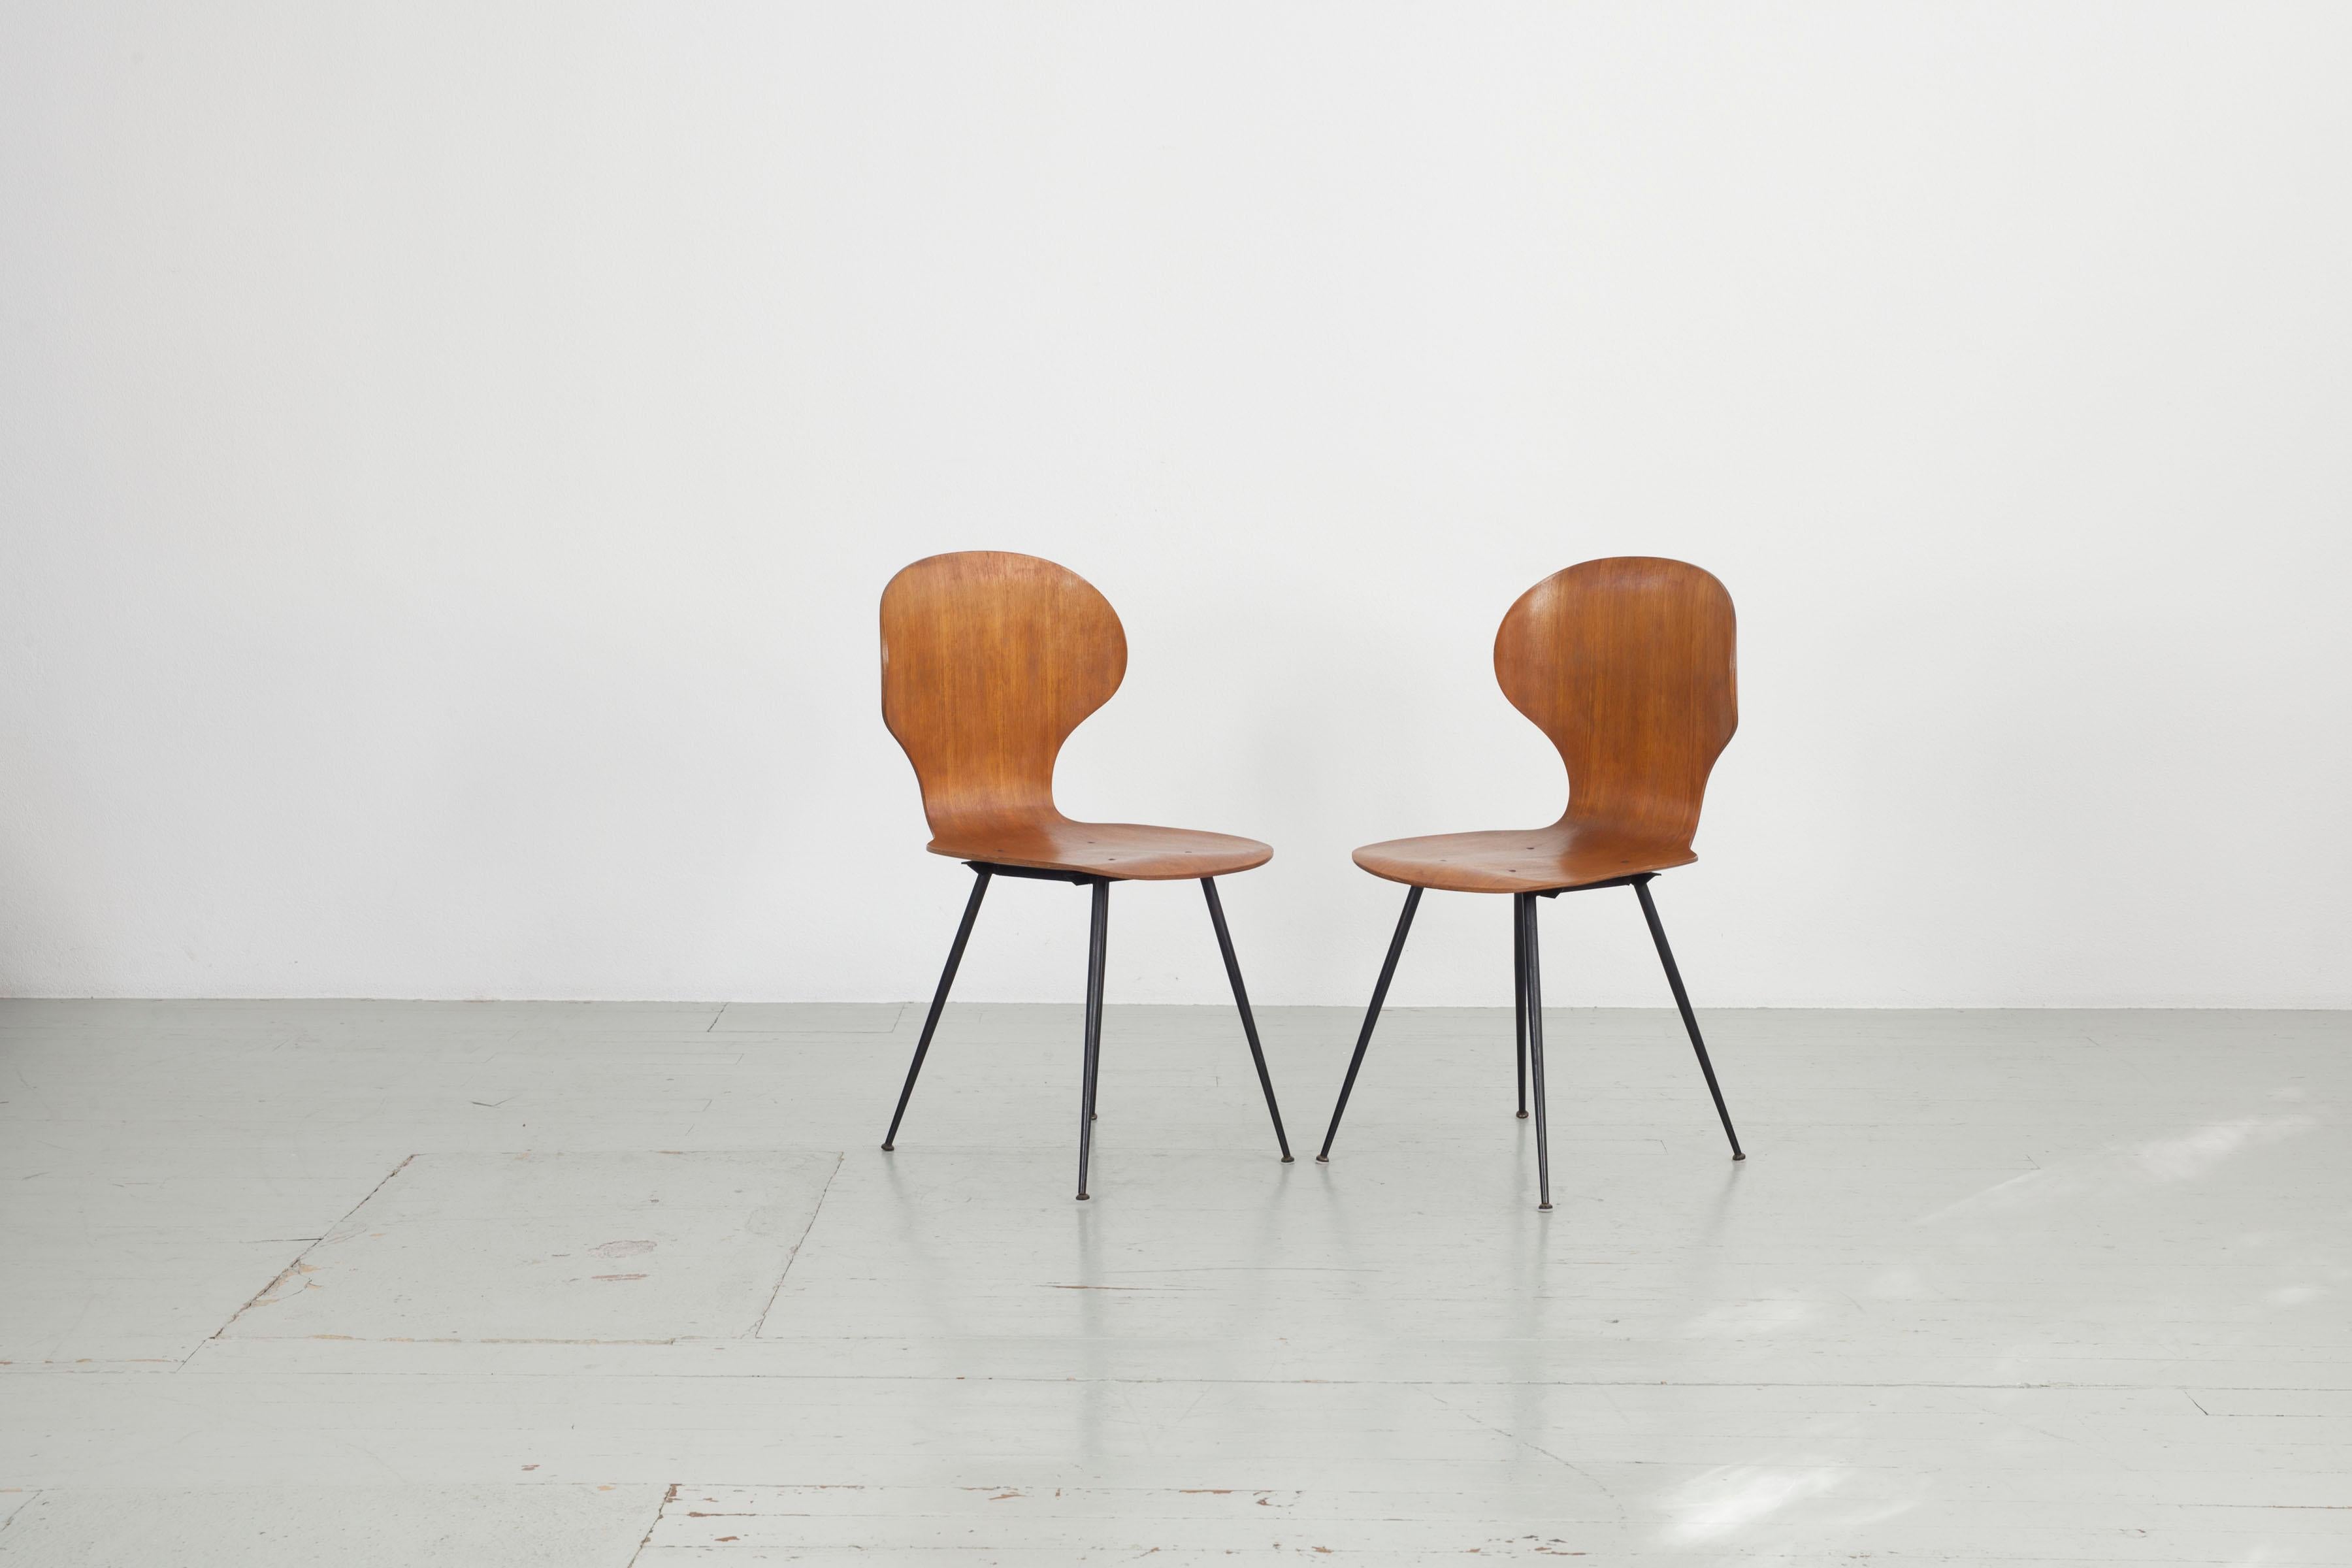 2er-Set 
Dieses italienische Stuhlmodell wurde in den 1950er Jahren von Carlo Ratti für Industira Legni Curvati Lissoni entworfen und besteht aus Bugholz und schwarz lackierten Metallbeinen. Die abgerundeten Formen und dünnen Beine verleihen dem